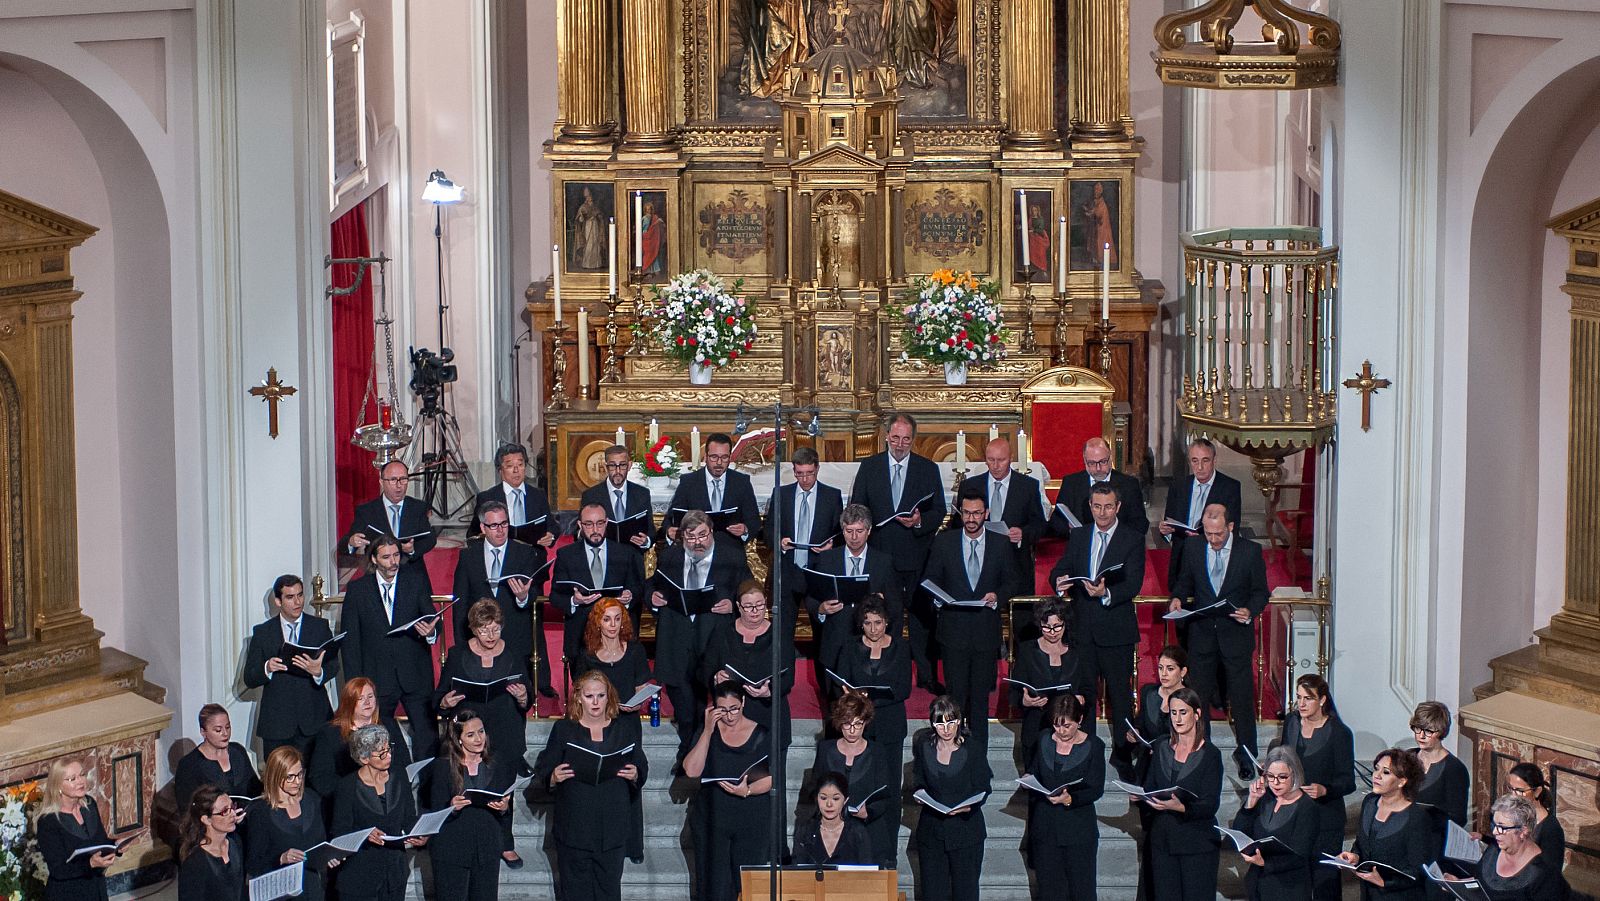 Concierto del Coro RTVE en el Real Monasterio de Santa Isabel dirigido por Marco Antonio Garc�a de Paz